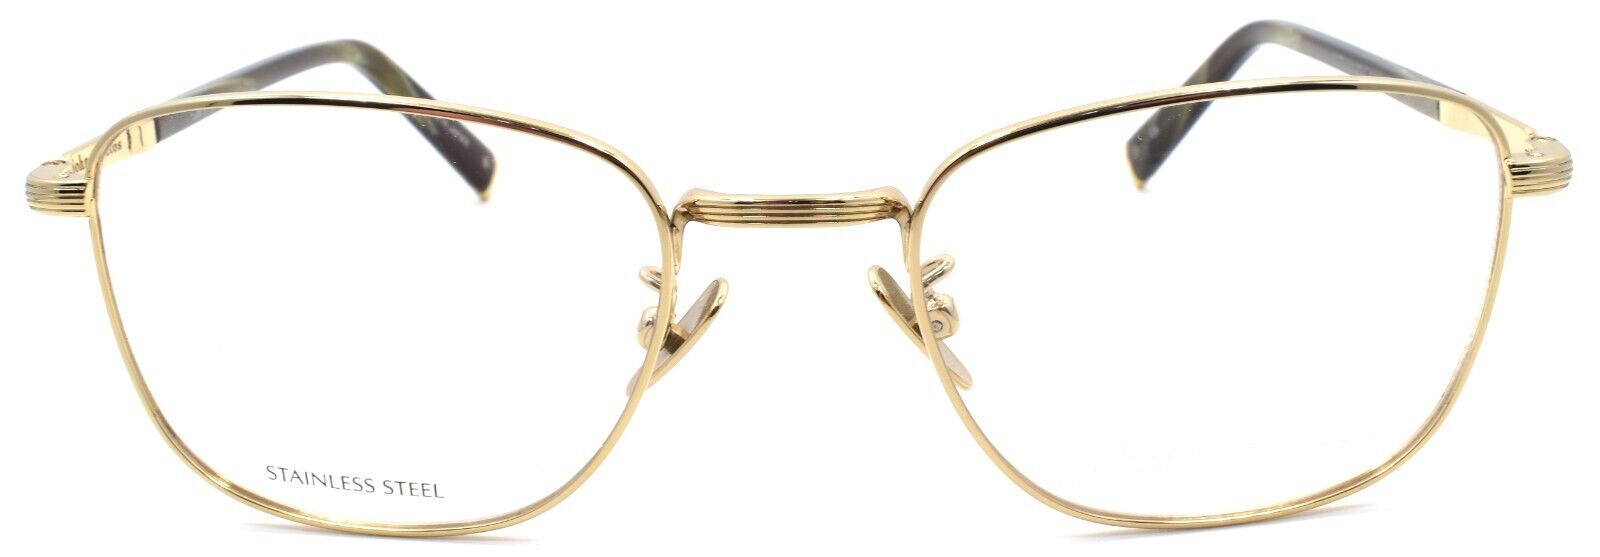 2-John Varvatos V177 Men's Eyeglasses Frames 51-20-145 Gold Japan-751286329926-IKSpecs